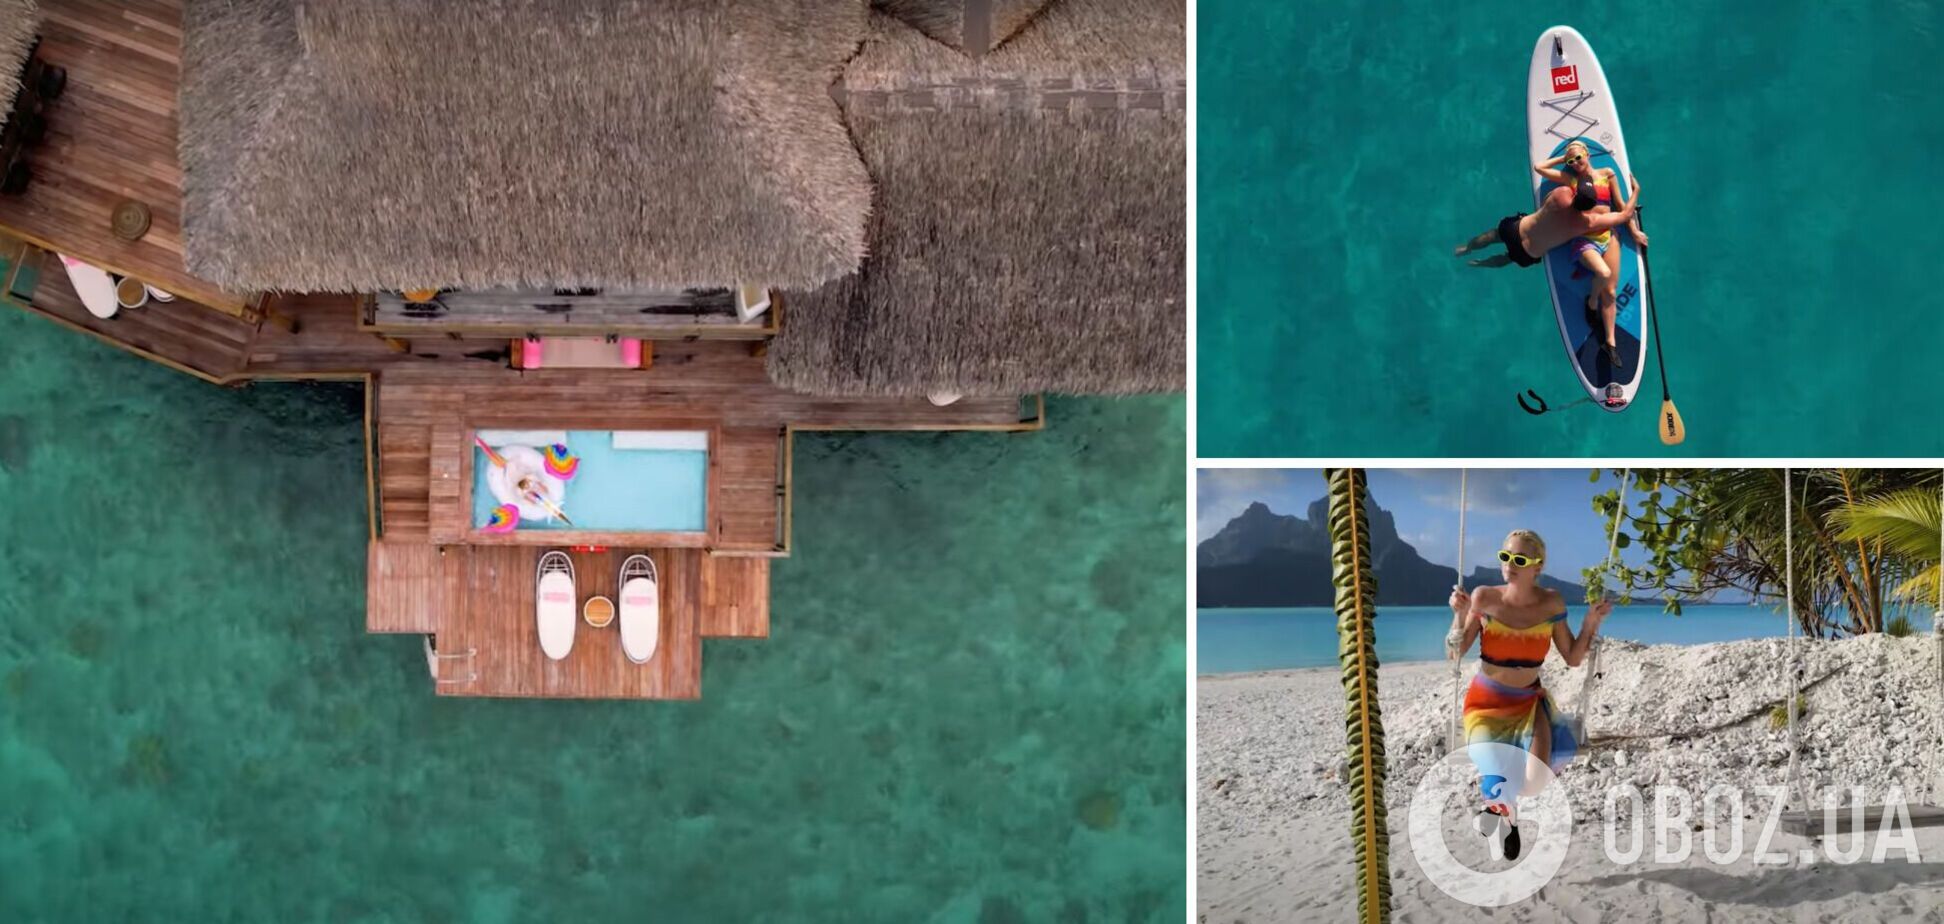 Частный остров, яхта и вилла над океаном: как проходит медовый месяц Пэрис Хилтон. Фото